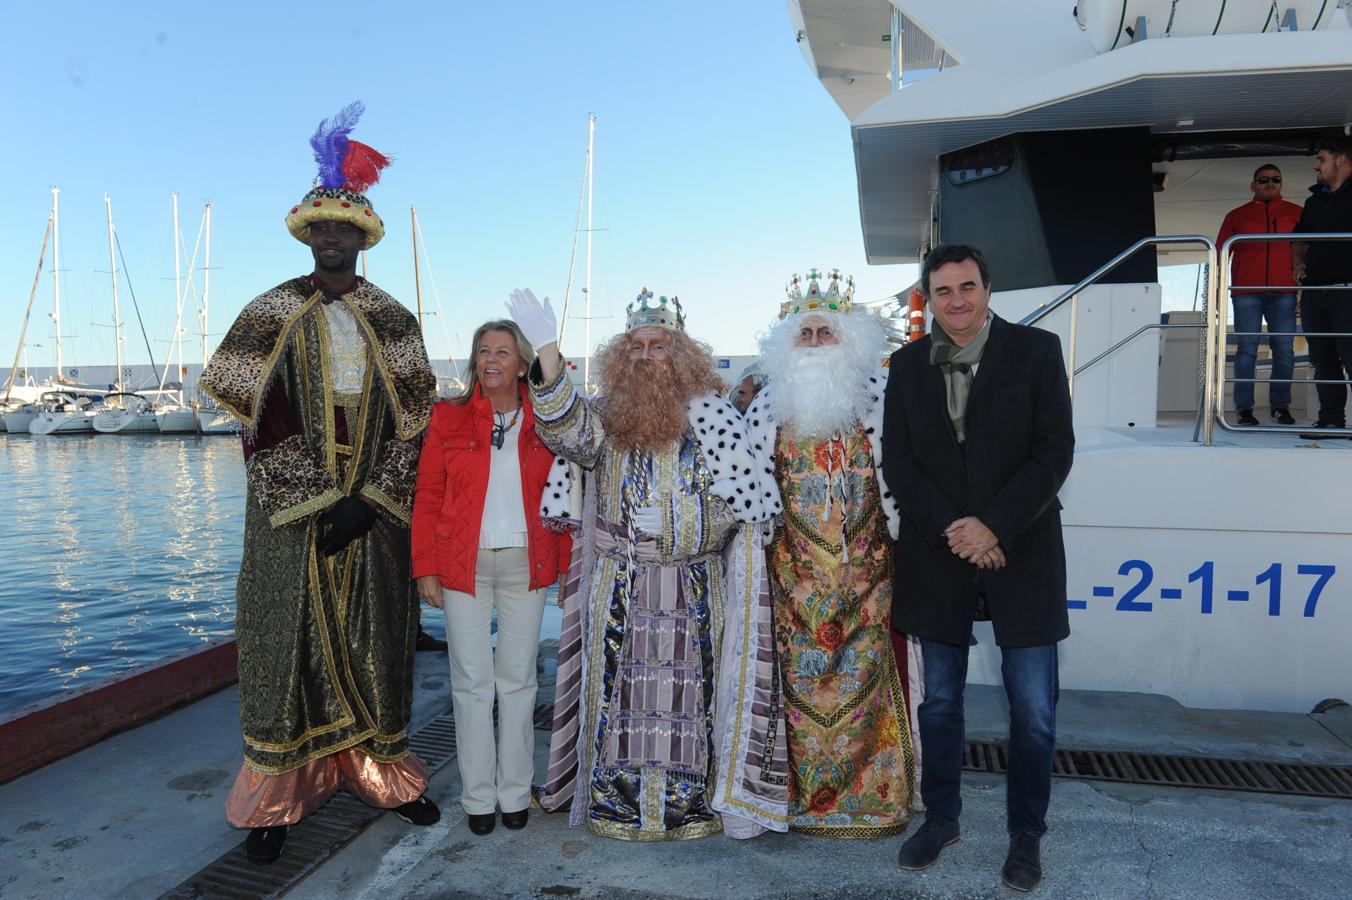 Three Kings arrive in Marbella